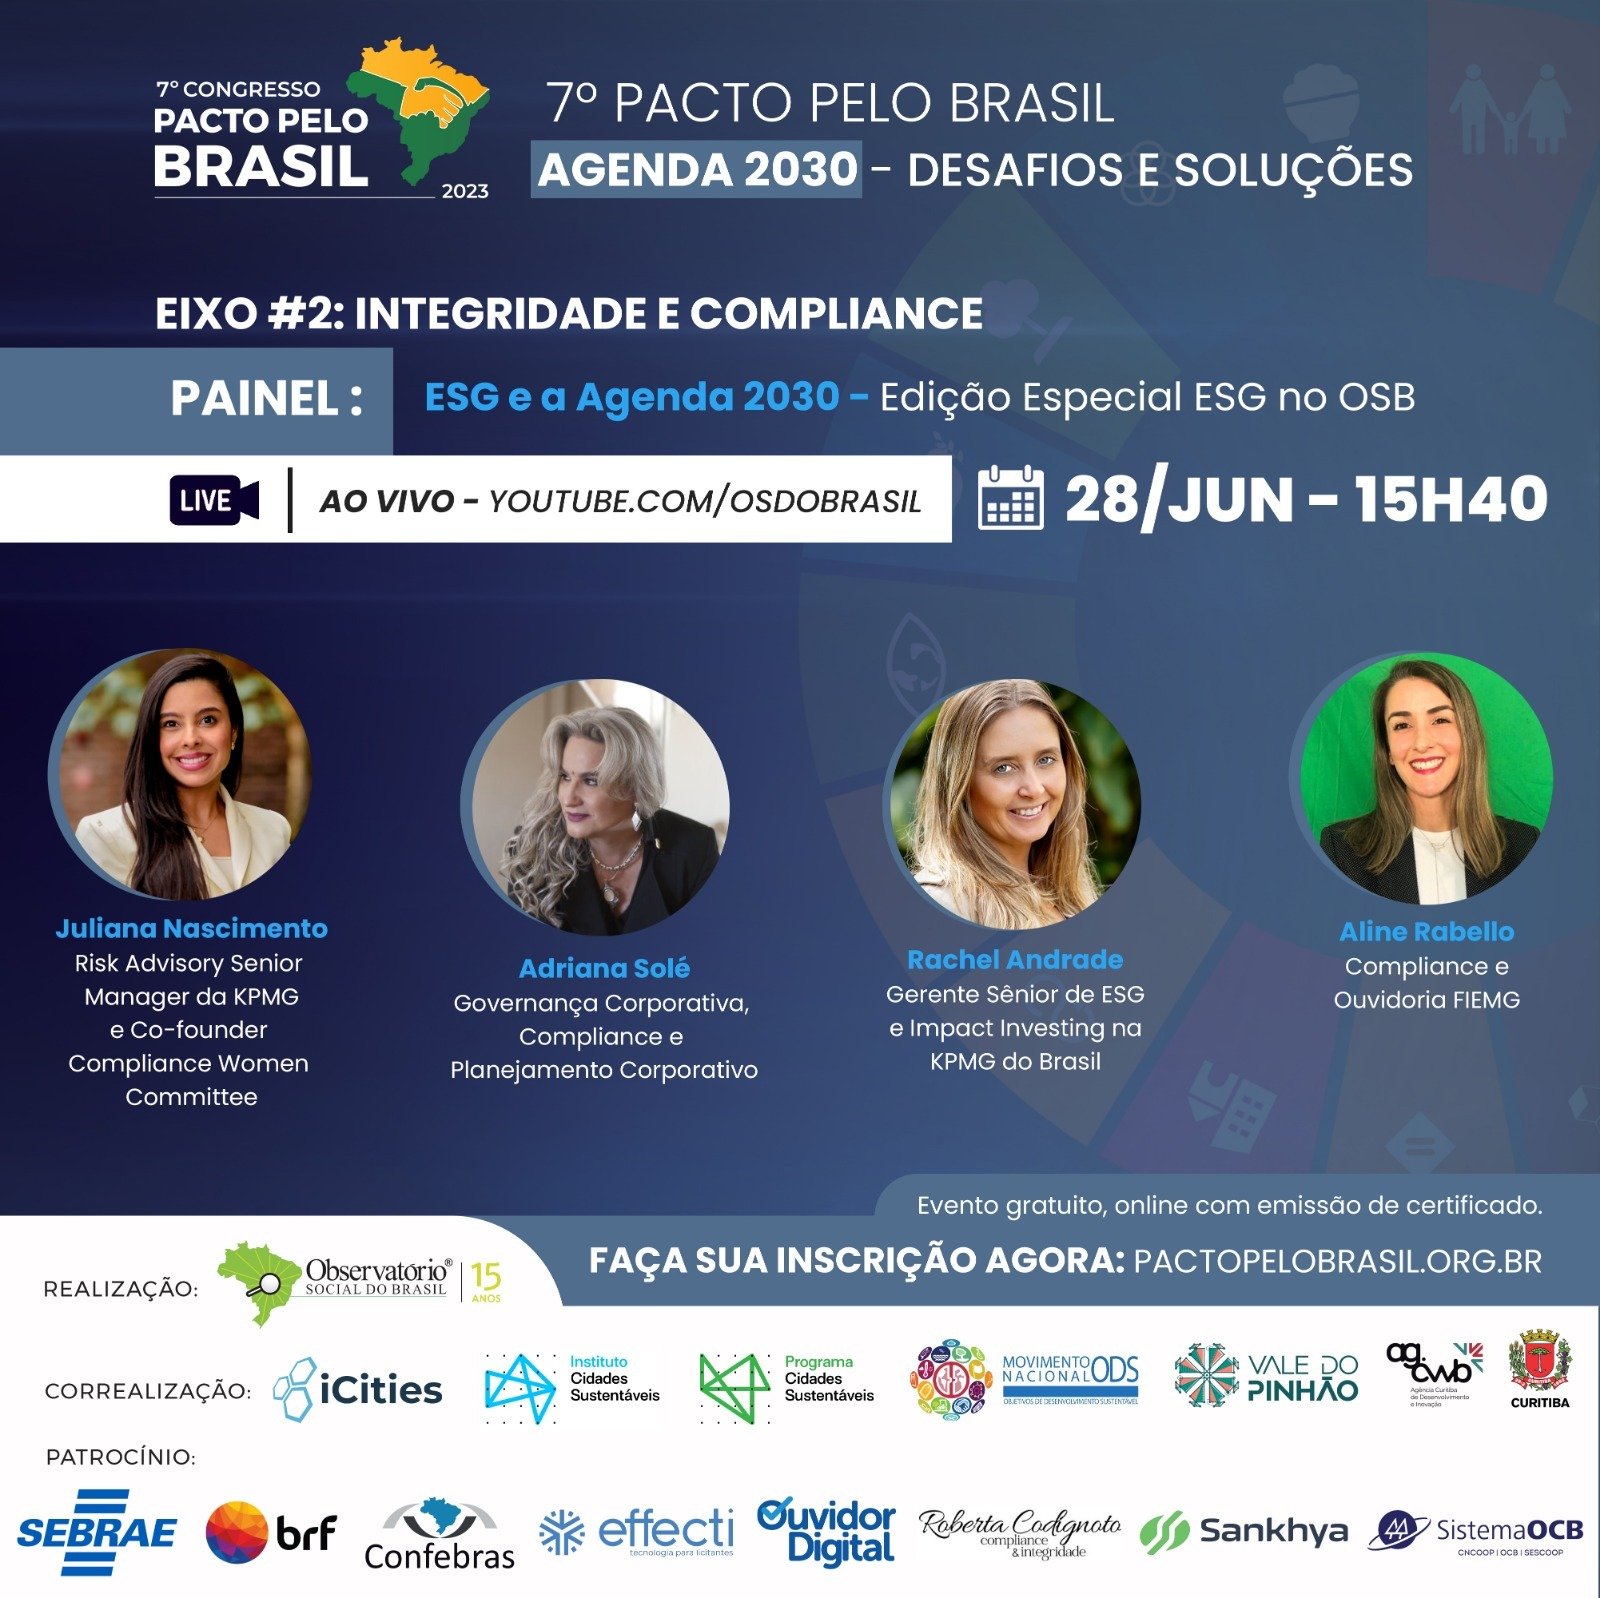 7º Congresso Pacto pelo Brasil: não perca o painel “ESG e a Agenda 2030”